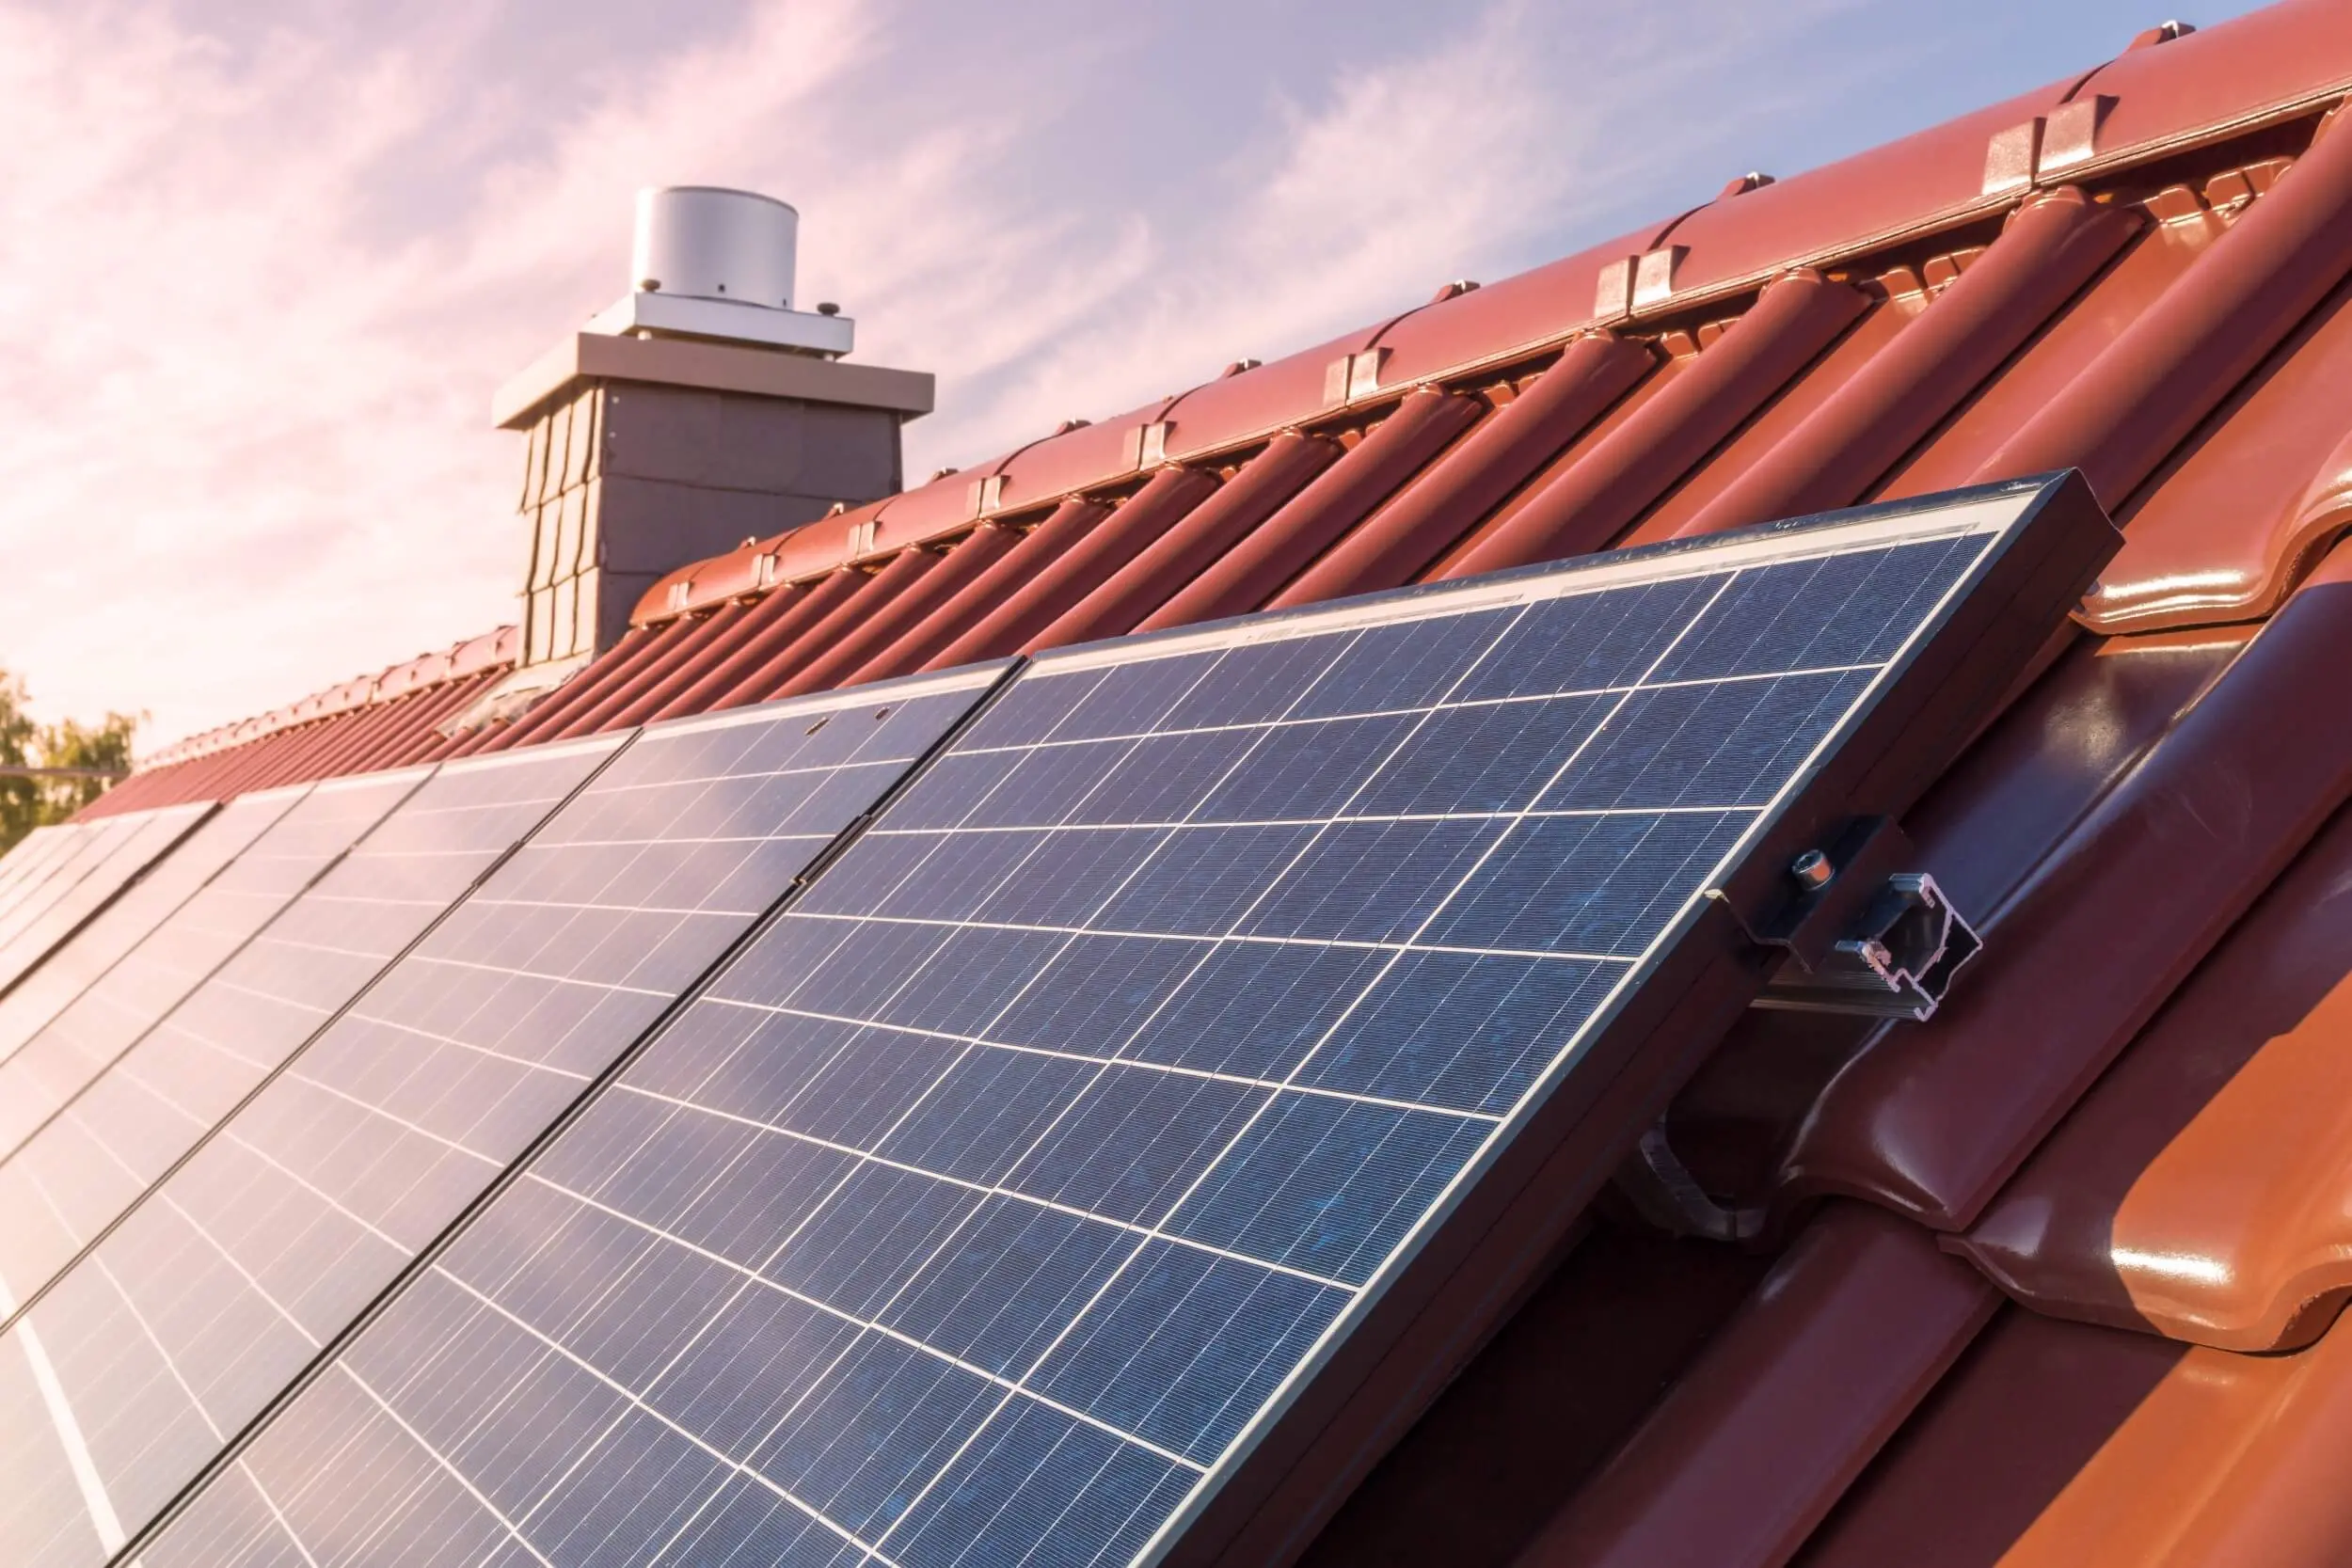 ¿Cual es la capacidad de generación de energía de una placa solar?